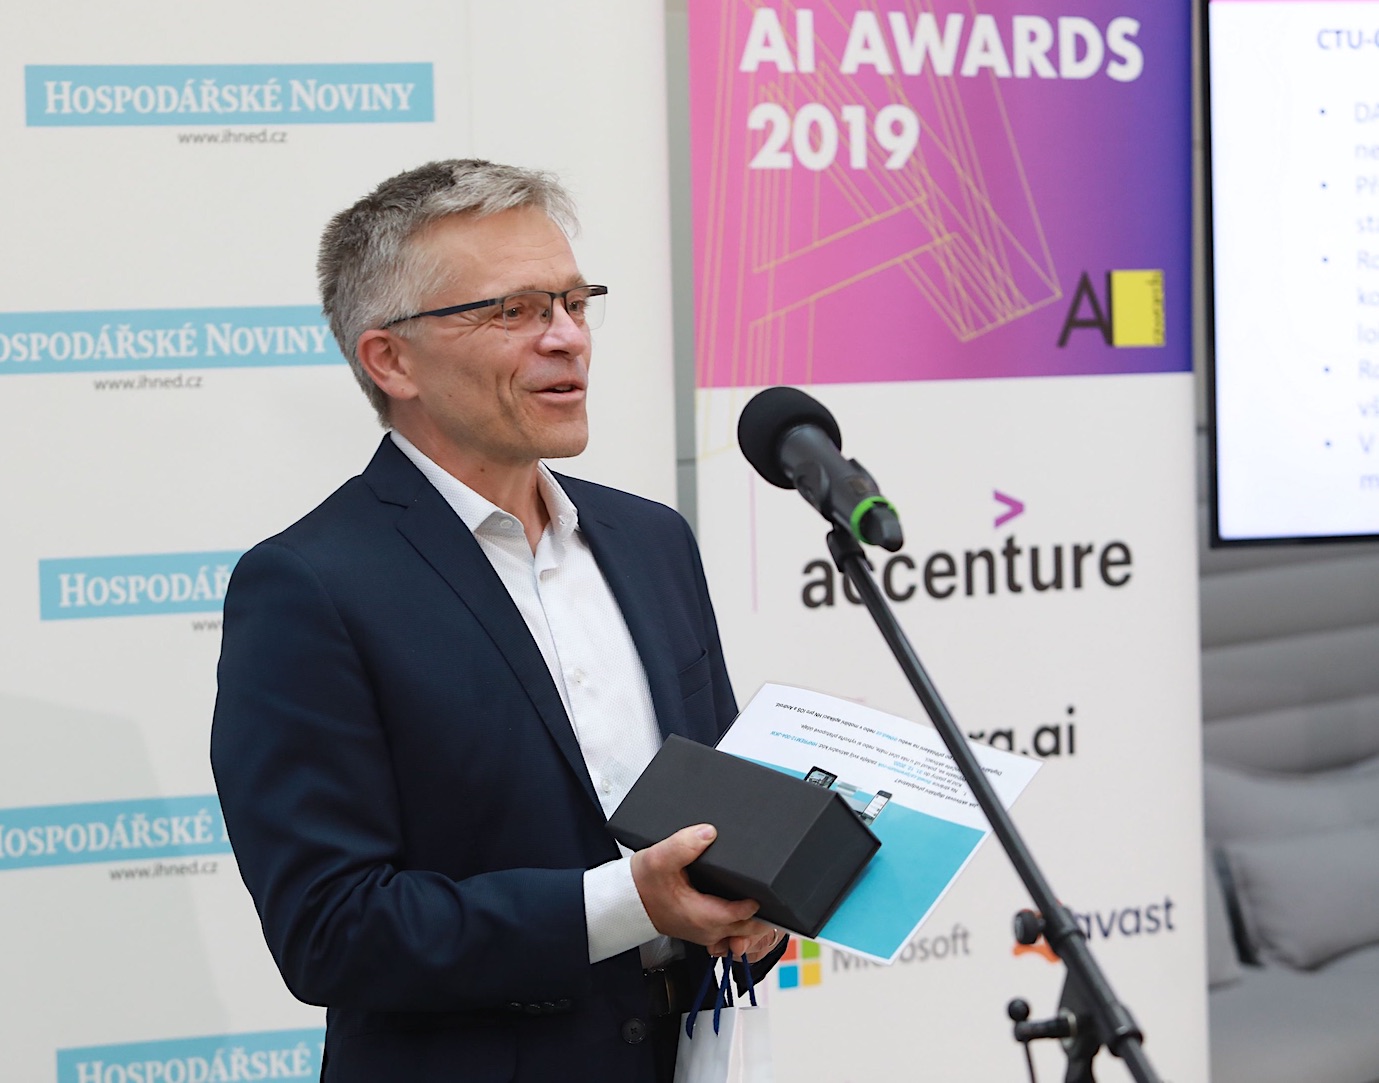 2020 at AI Awards